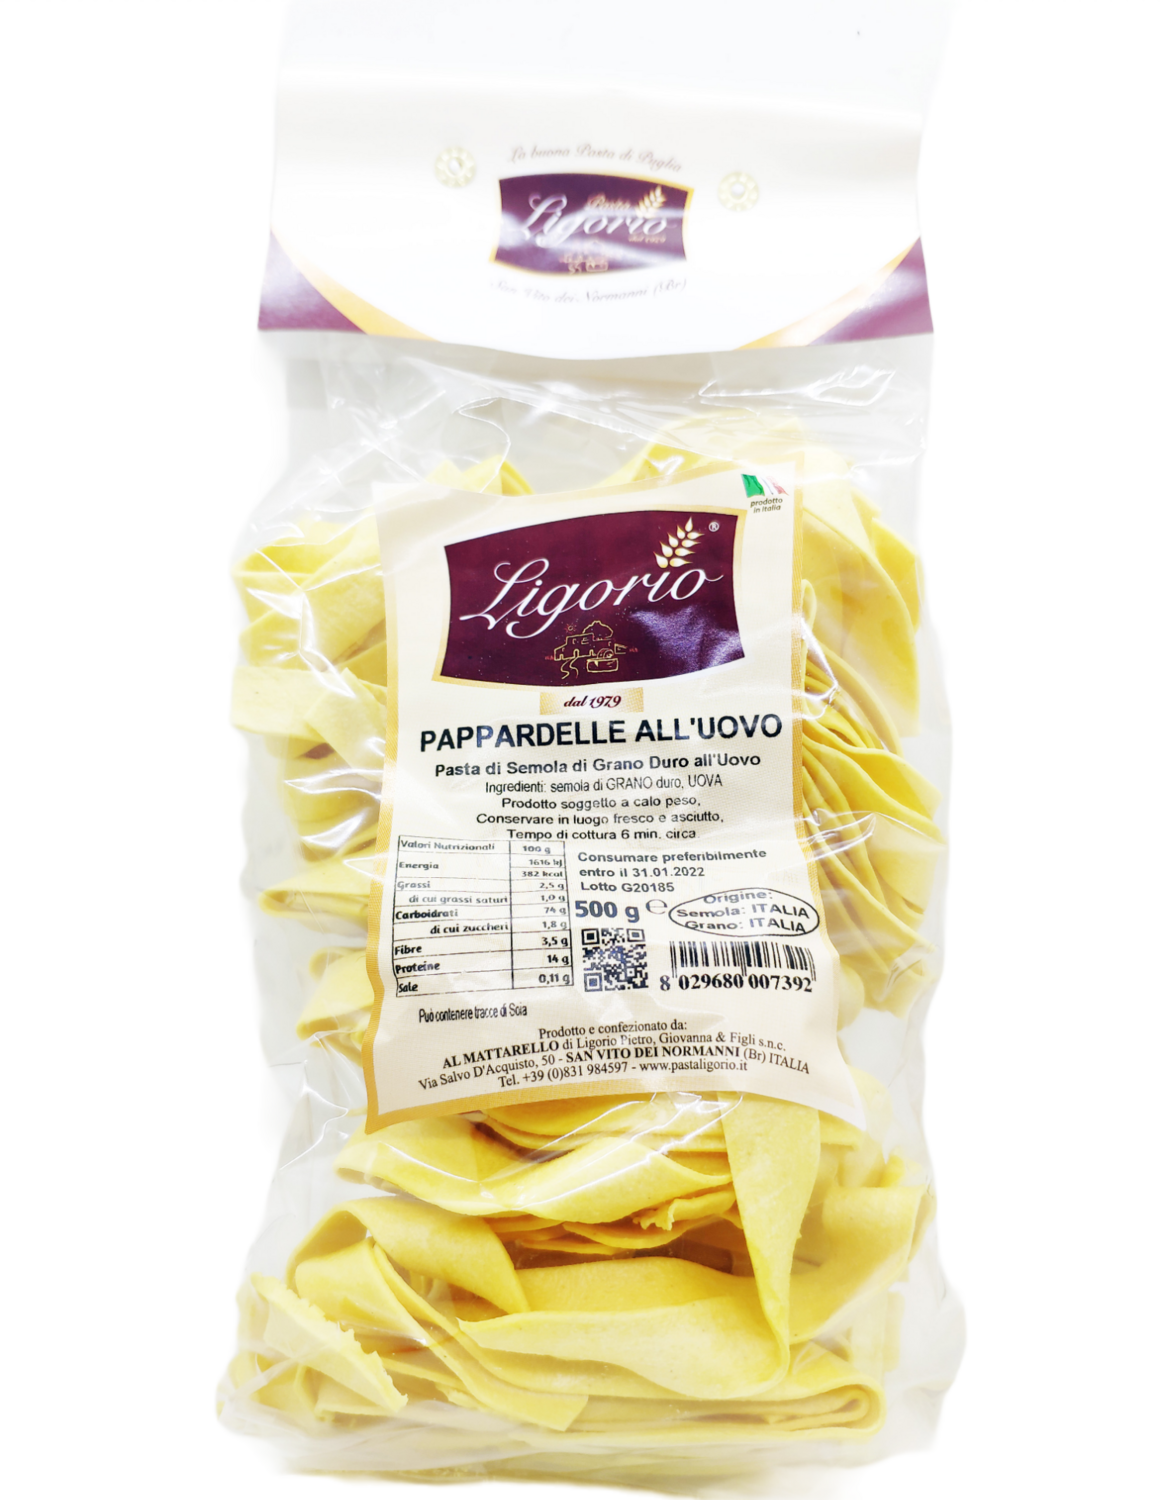 Pappardelle all'uovo - Ligorio